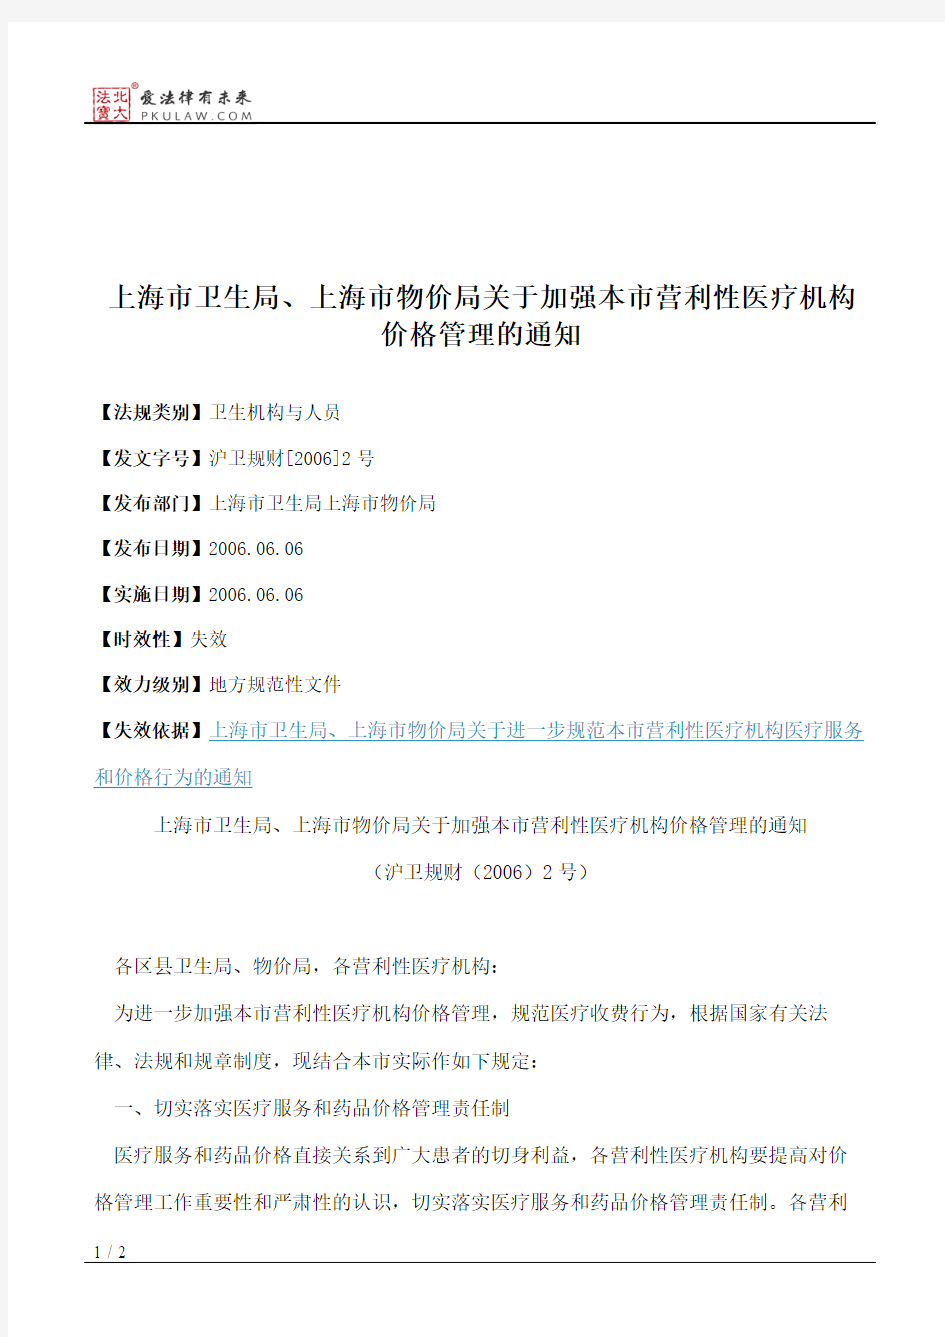 上海市卫生局、上海市物价局关于加强本市营利性医疗机构价格管理的通知